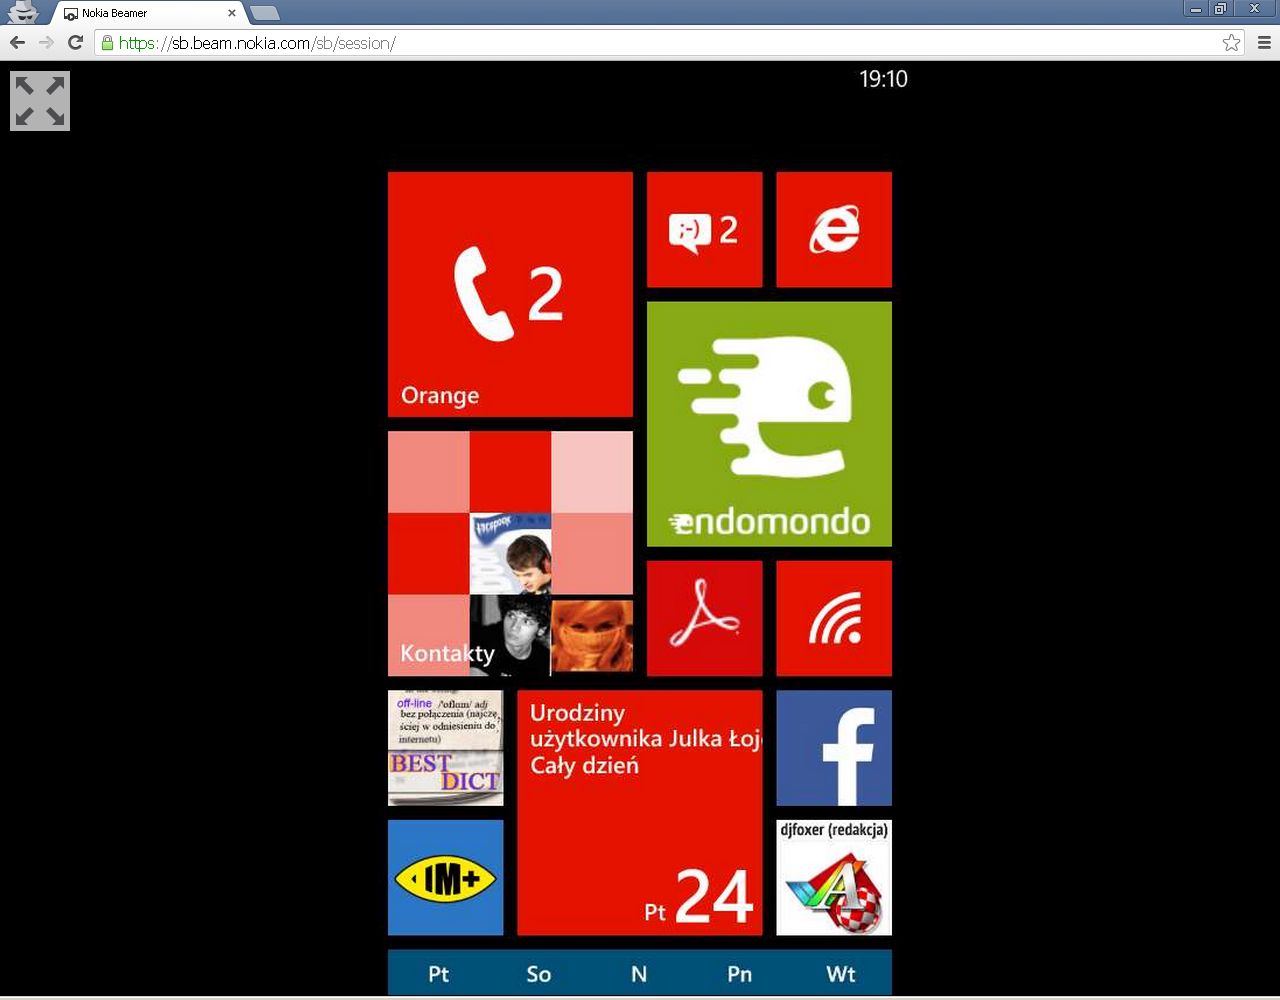 Nokia Beamer - udostępnianie ekranu Lumii poprzez sieć